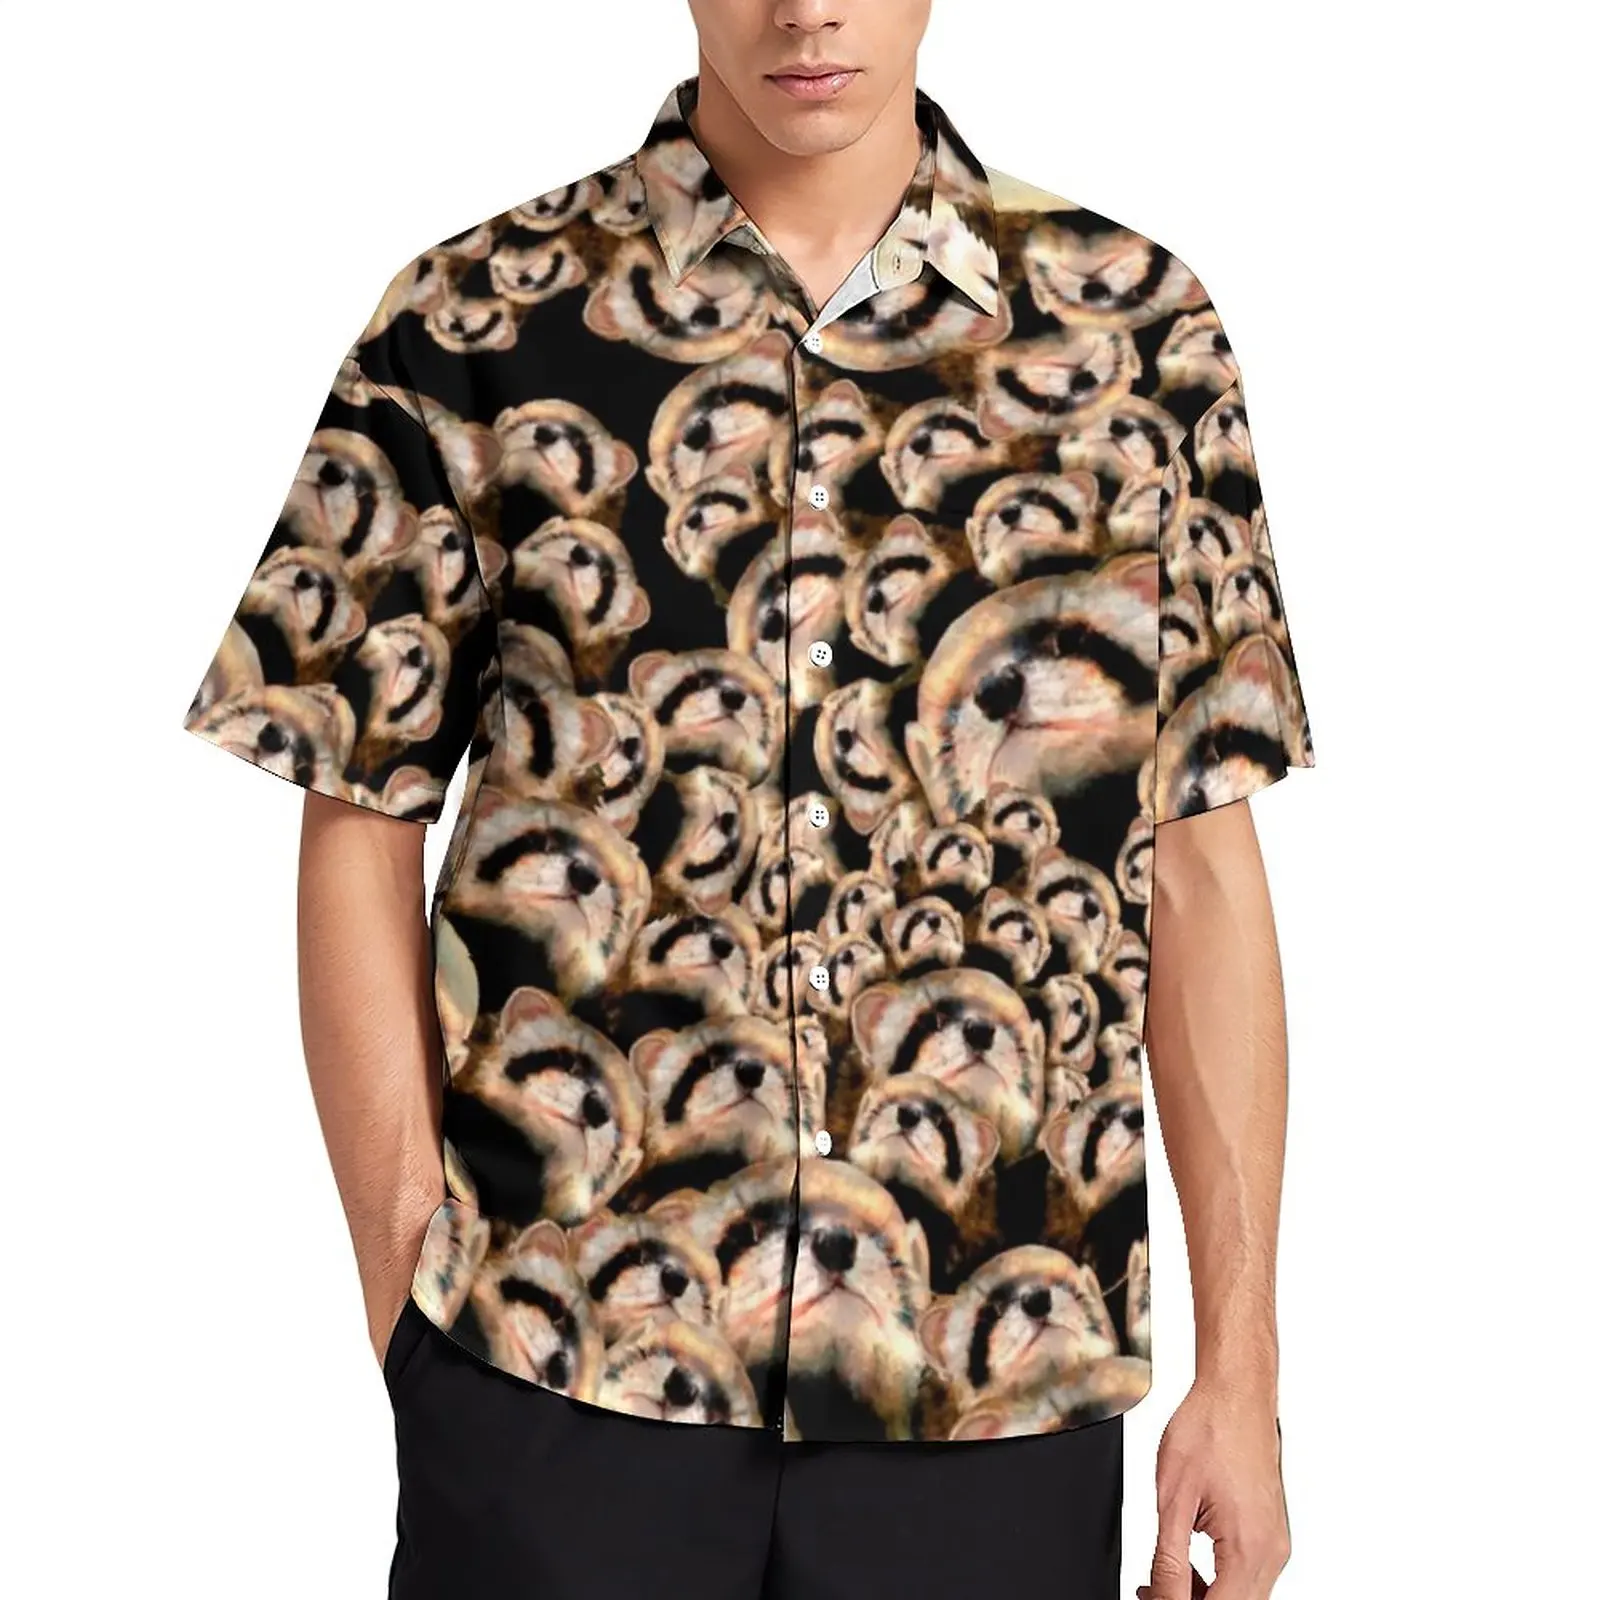 

Симпатичные повседневные рубашки хорька 101 пляжная рубашка с принтом хорька Гавайские модные блузки мужская модель с принтом